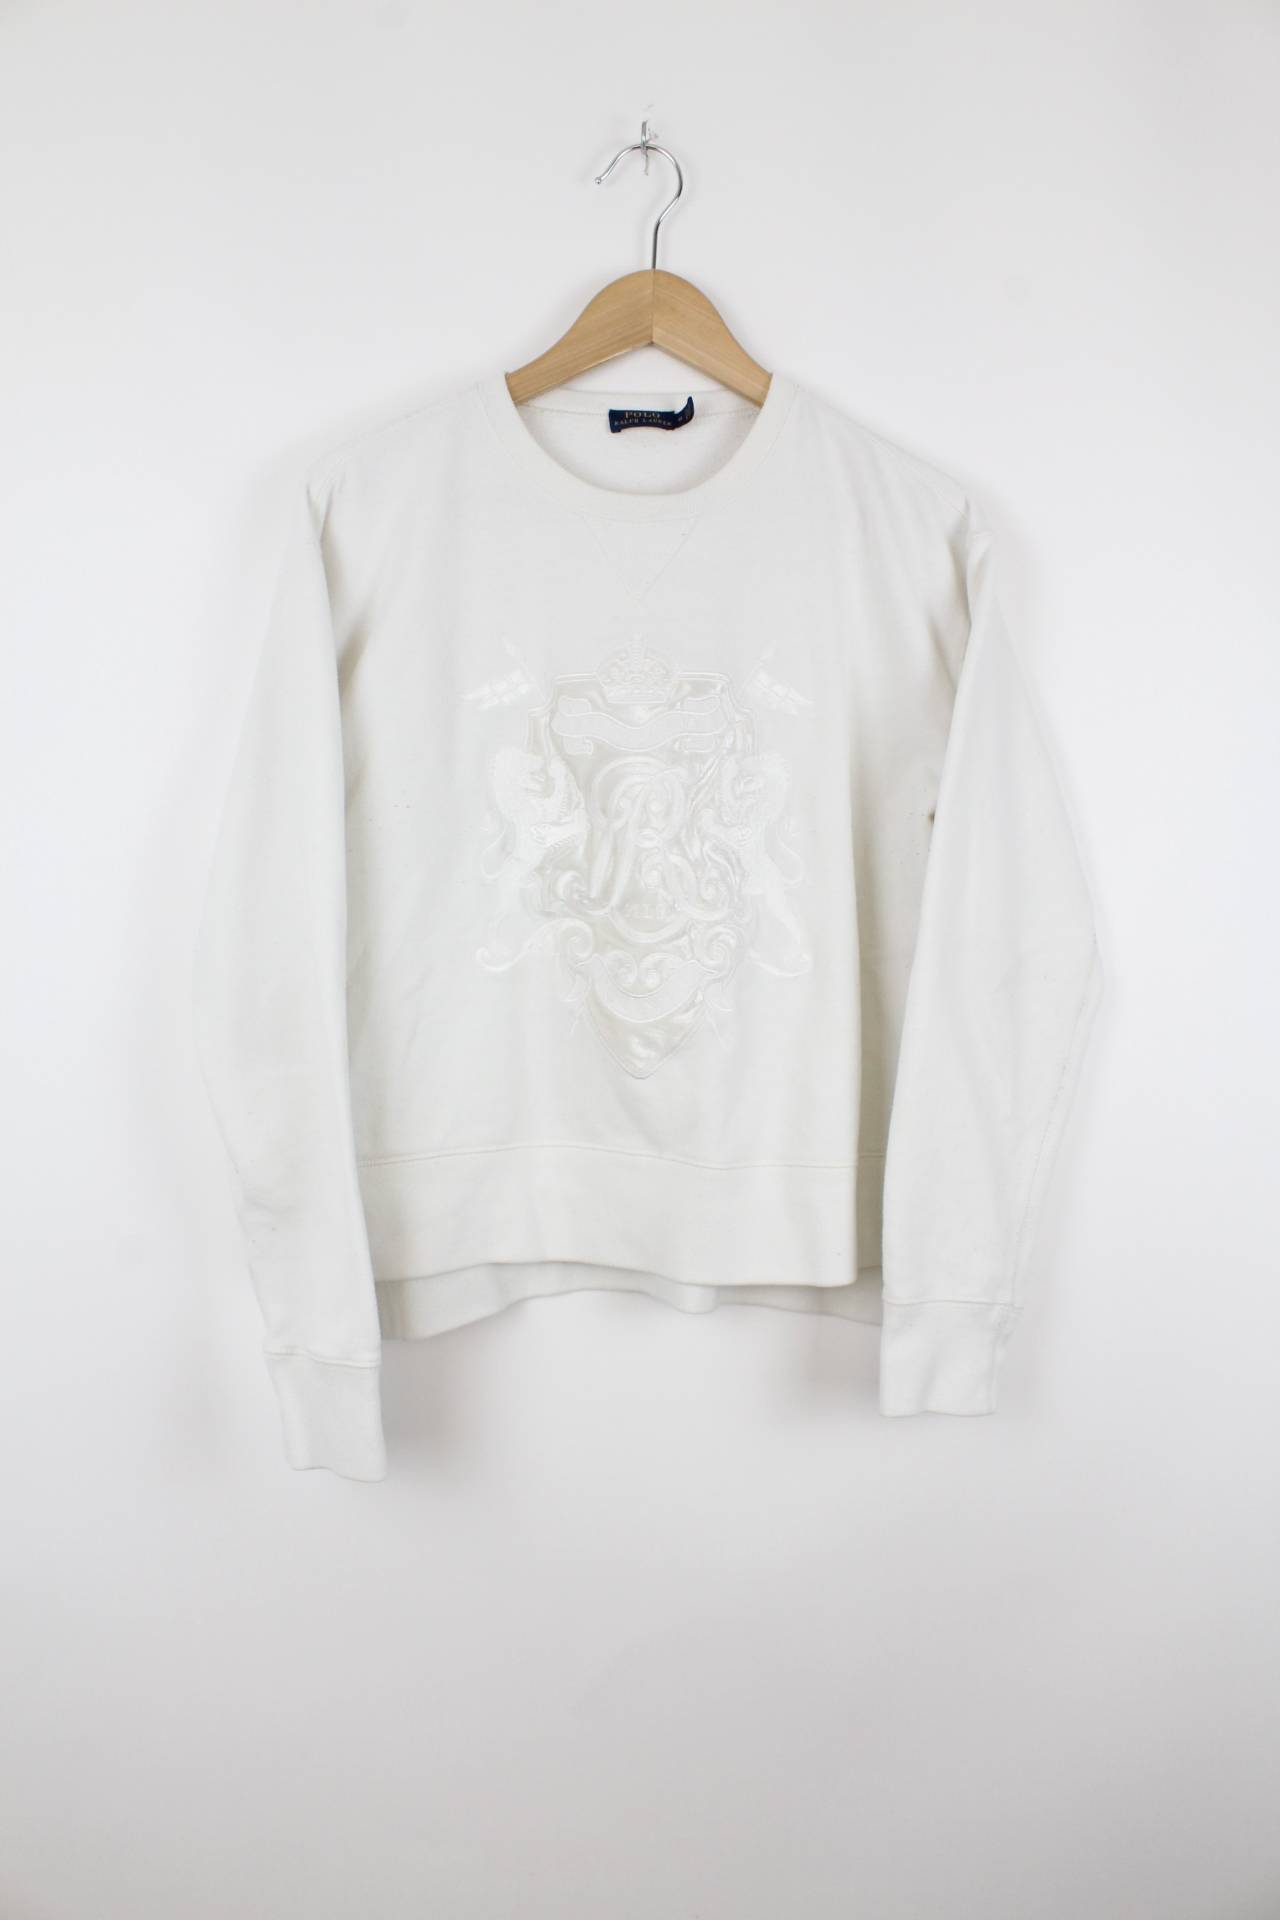 Ralph Lauren Sweater Weiß - M